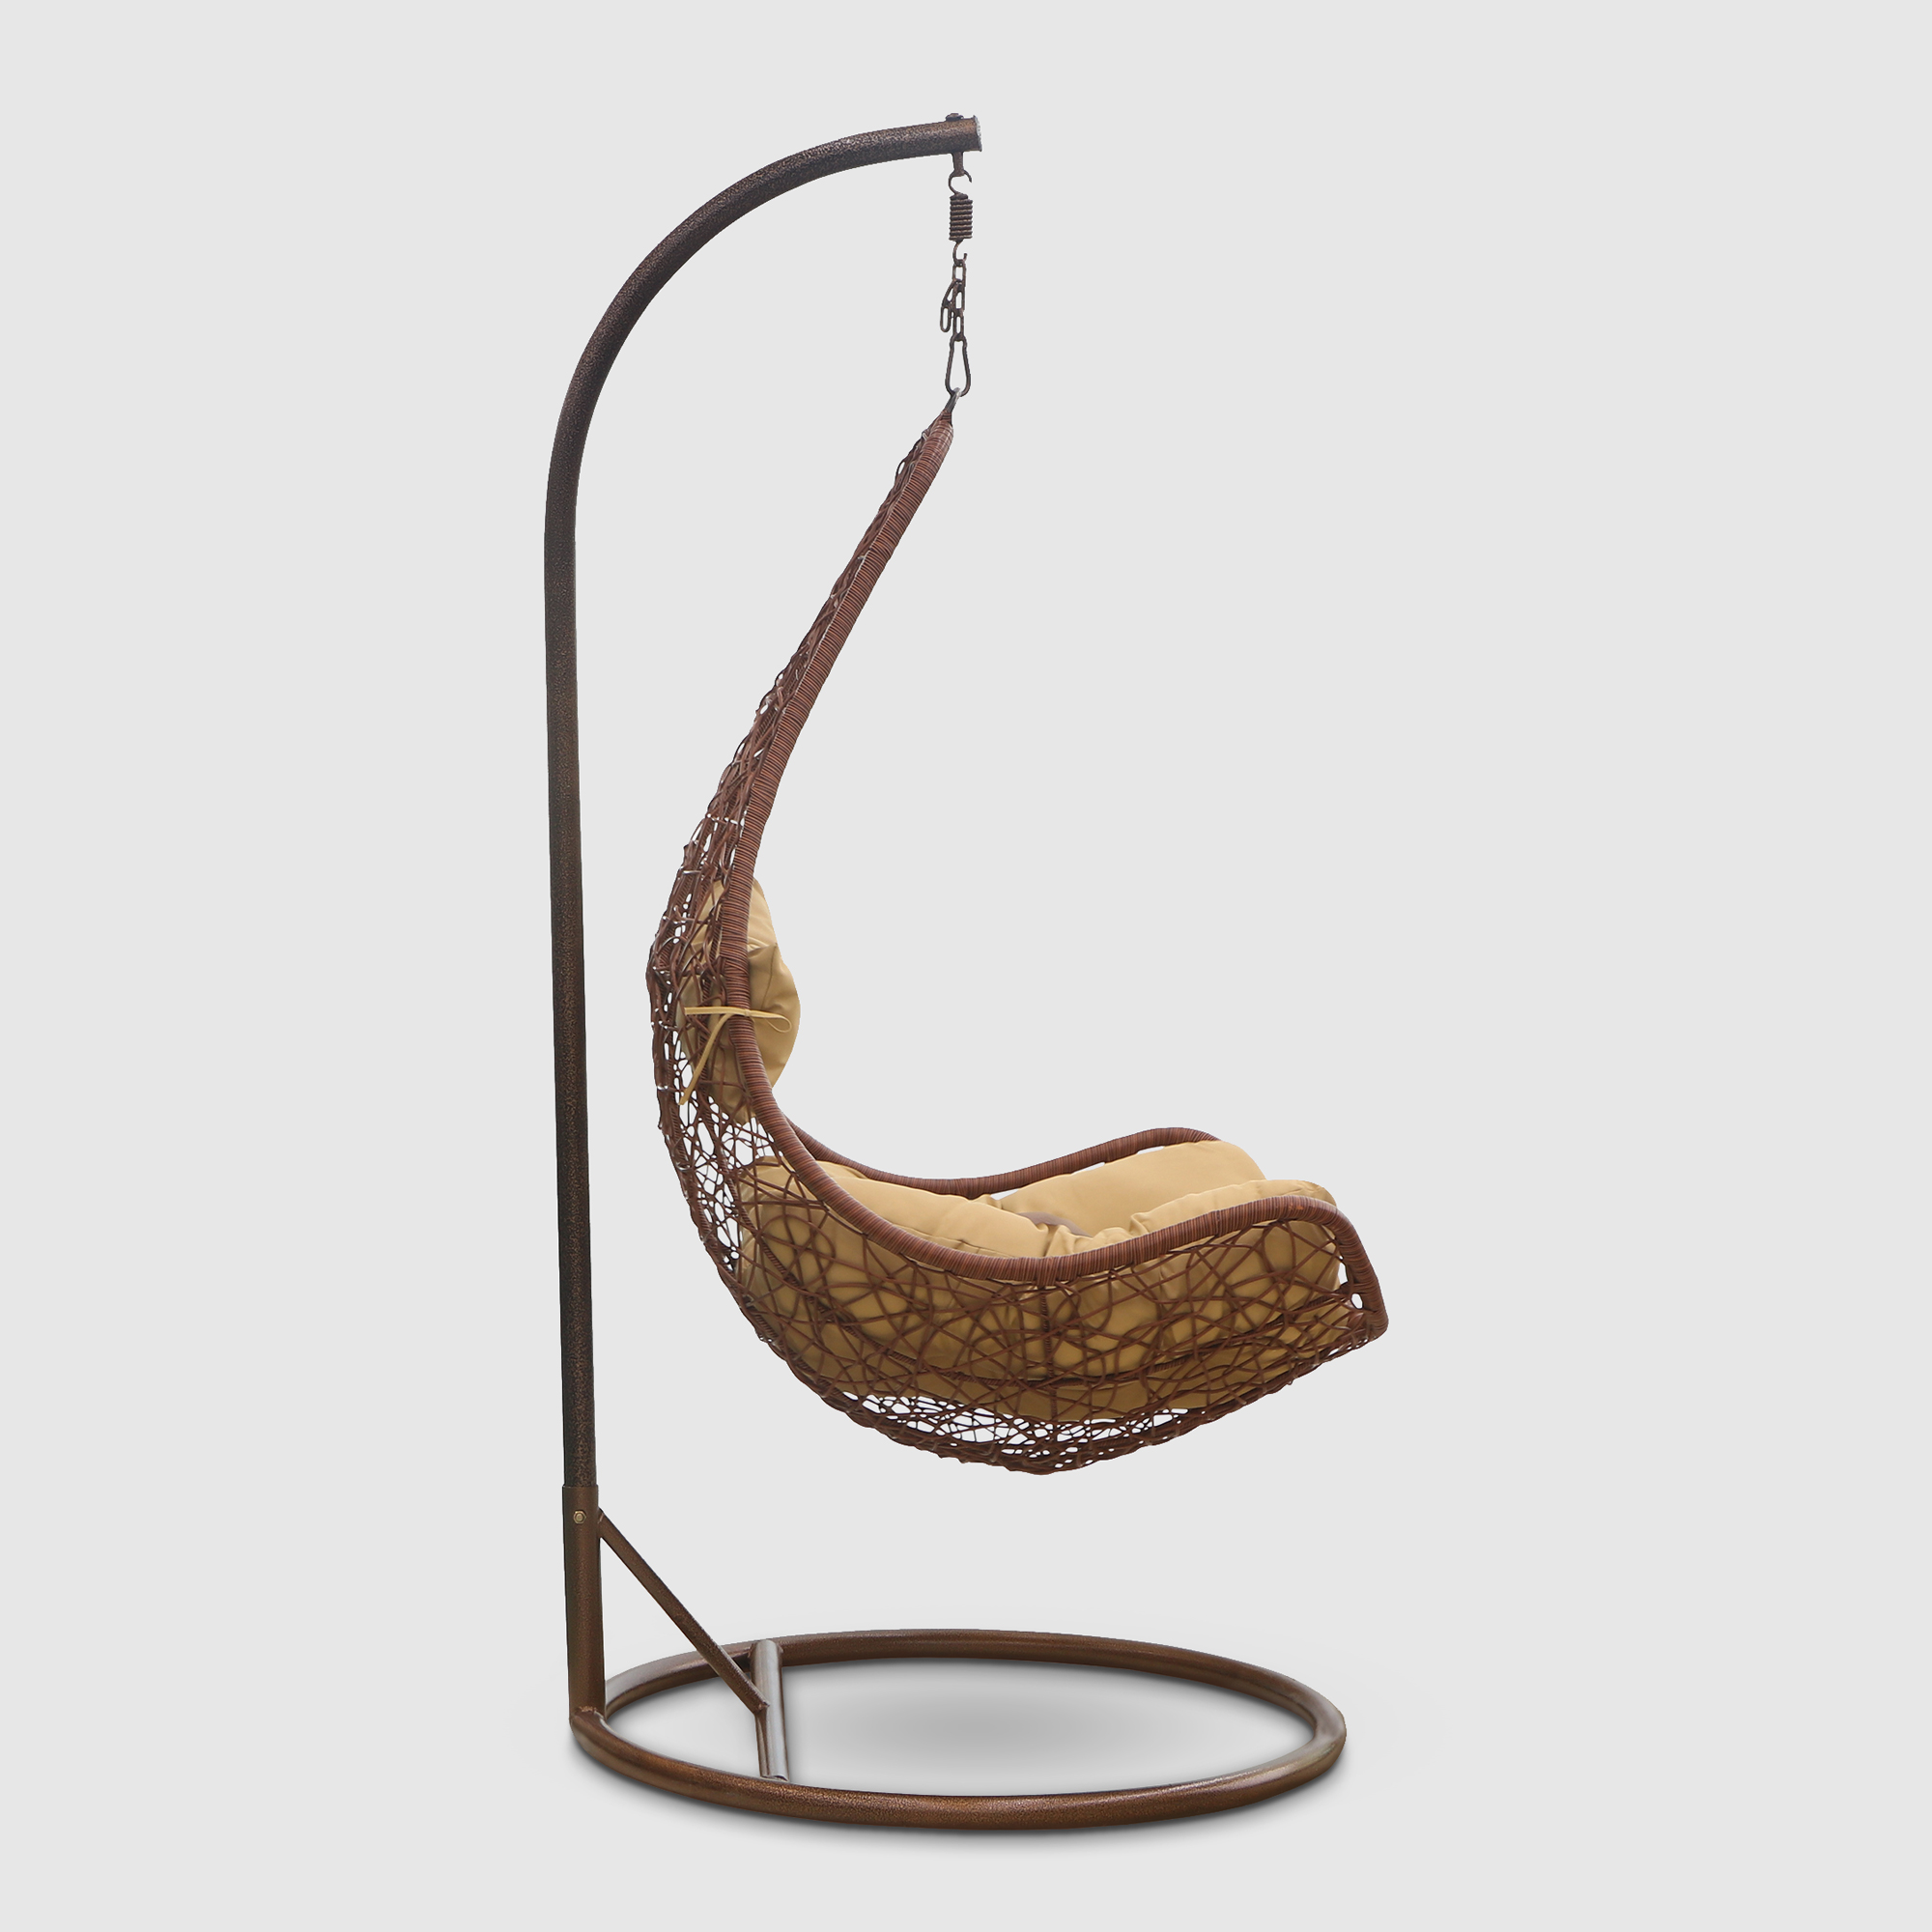 Кресло подвесное Art and craft furniture коричневое, цвет коричневый - фото 3